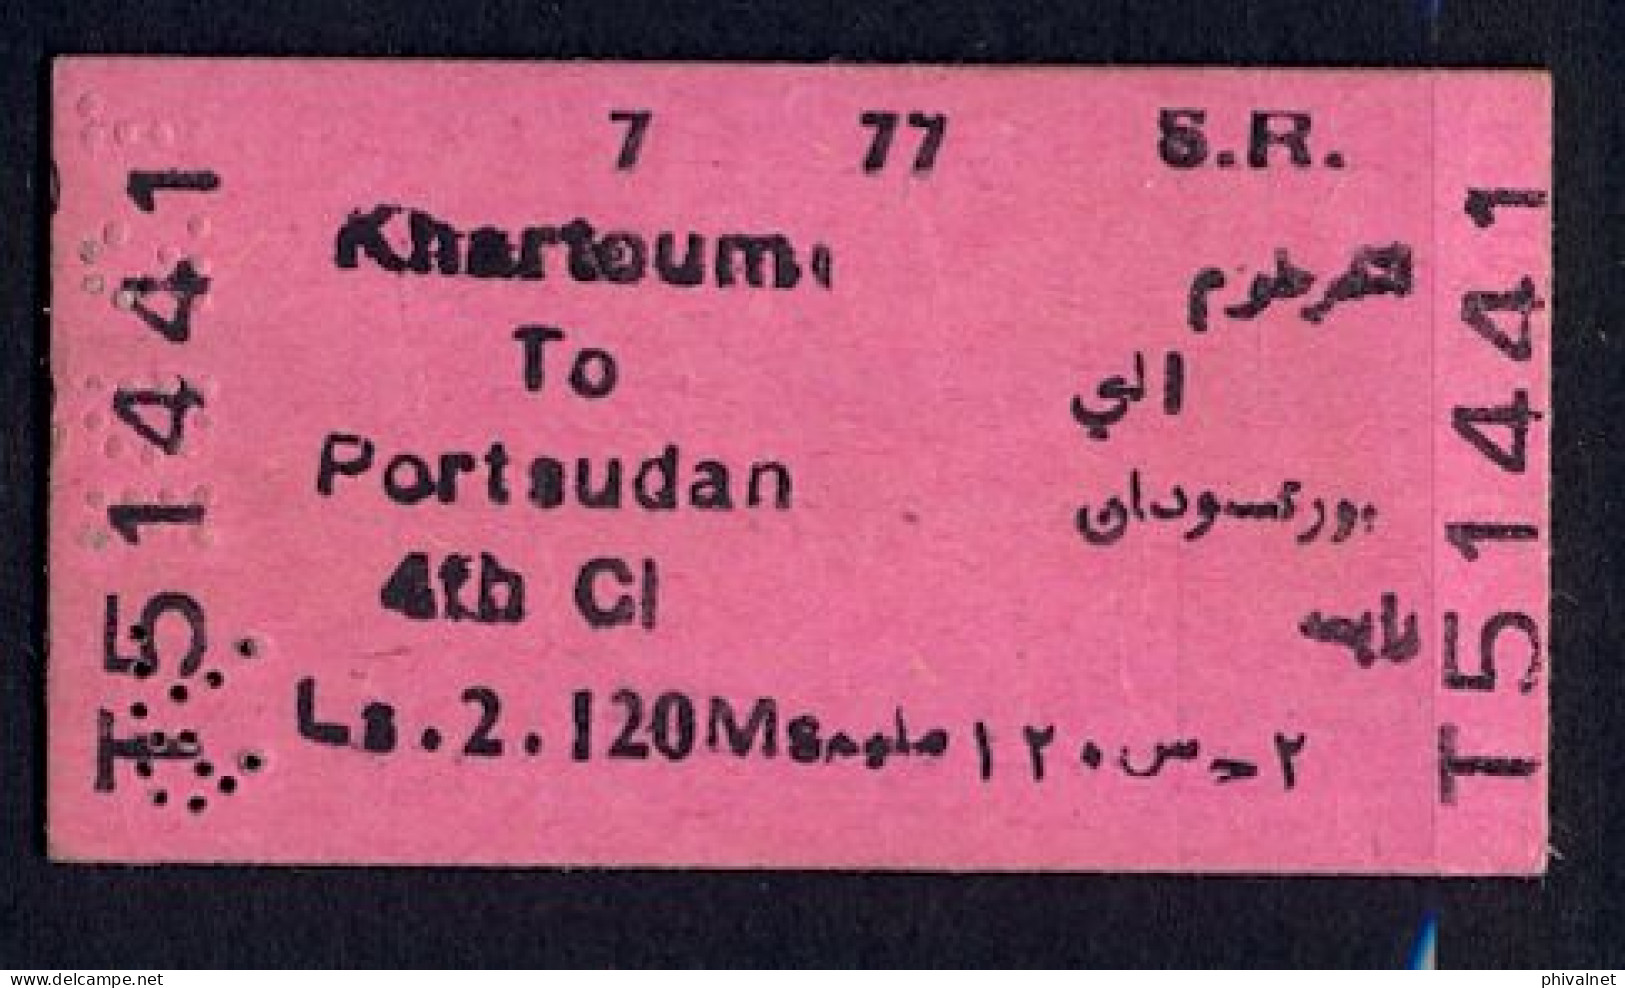 SOUDAN / SUDAN , KHARTOUM - PORT SUDAN , TICKET DE FERROCARRIL , TREN , TRAIN , RAILWAYS - Monde